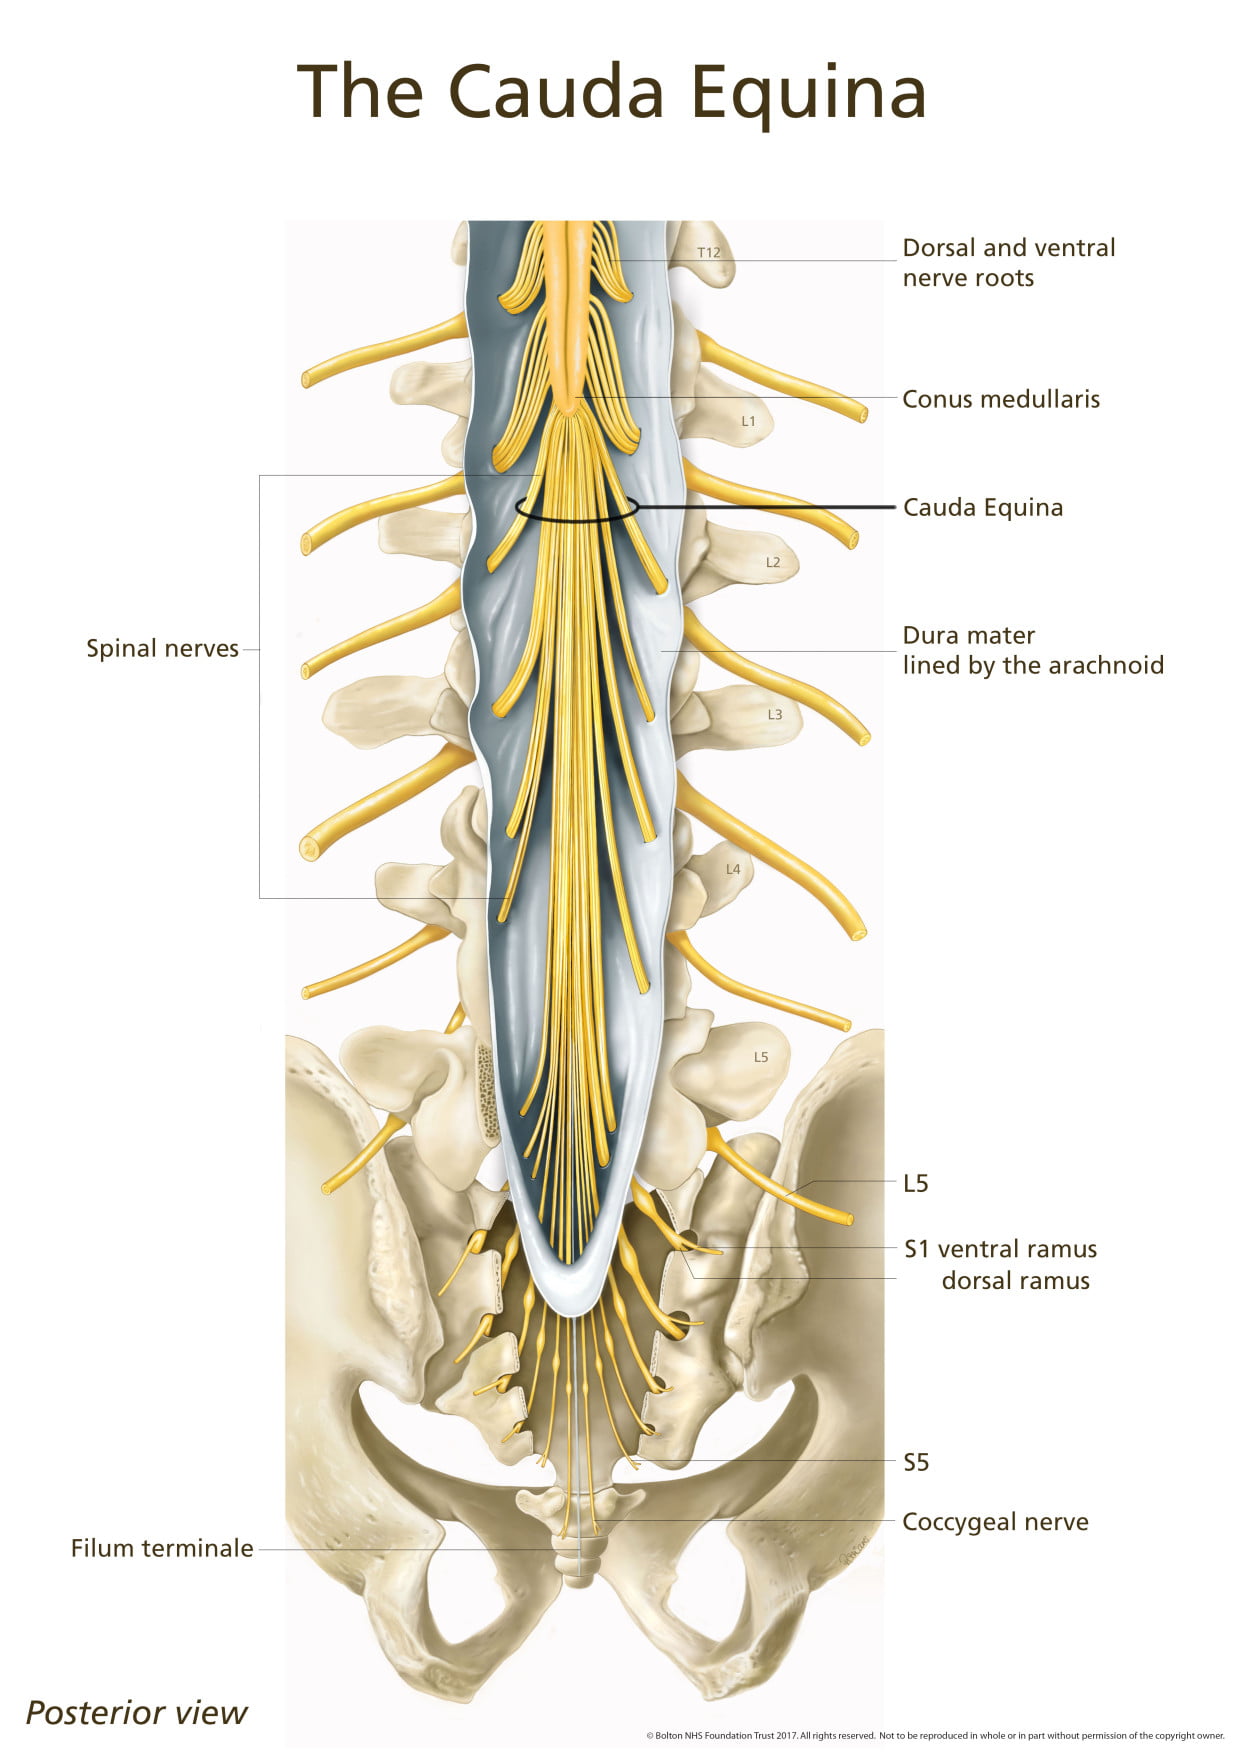 cauda equina vs conus medullaris syndrome